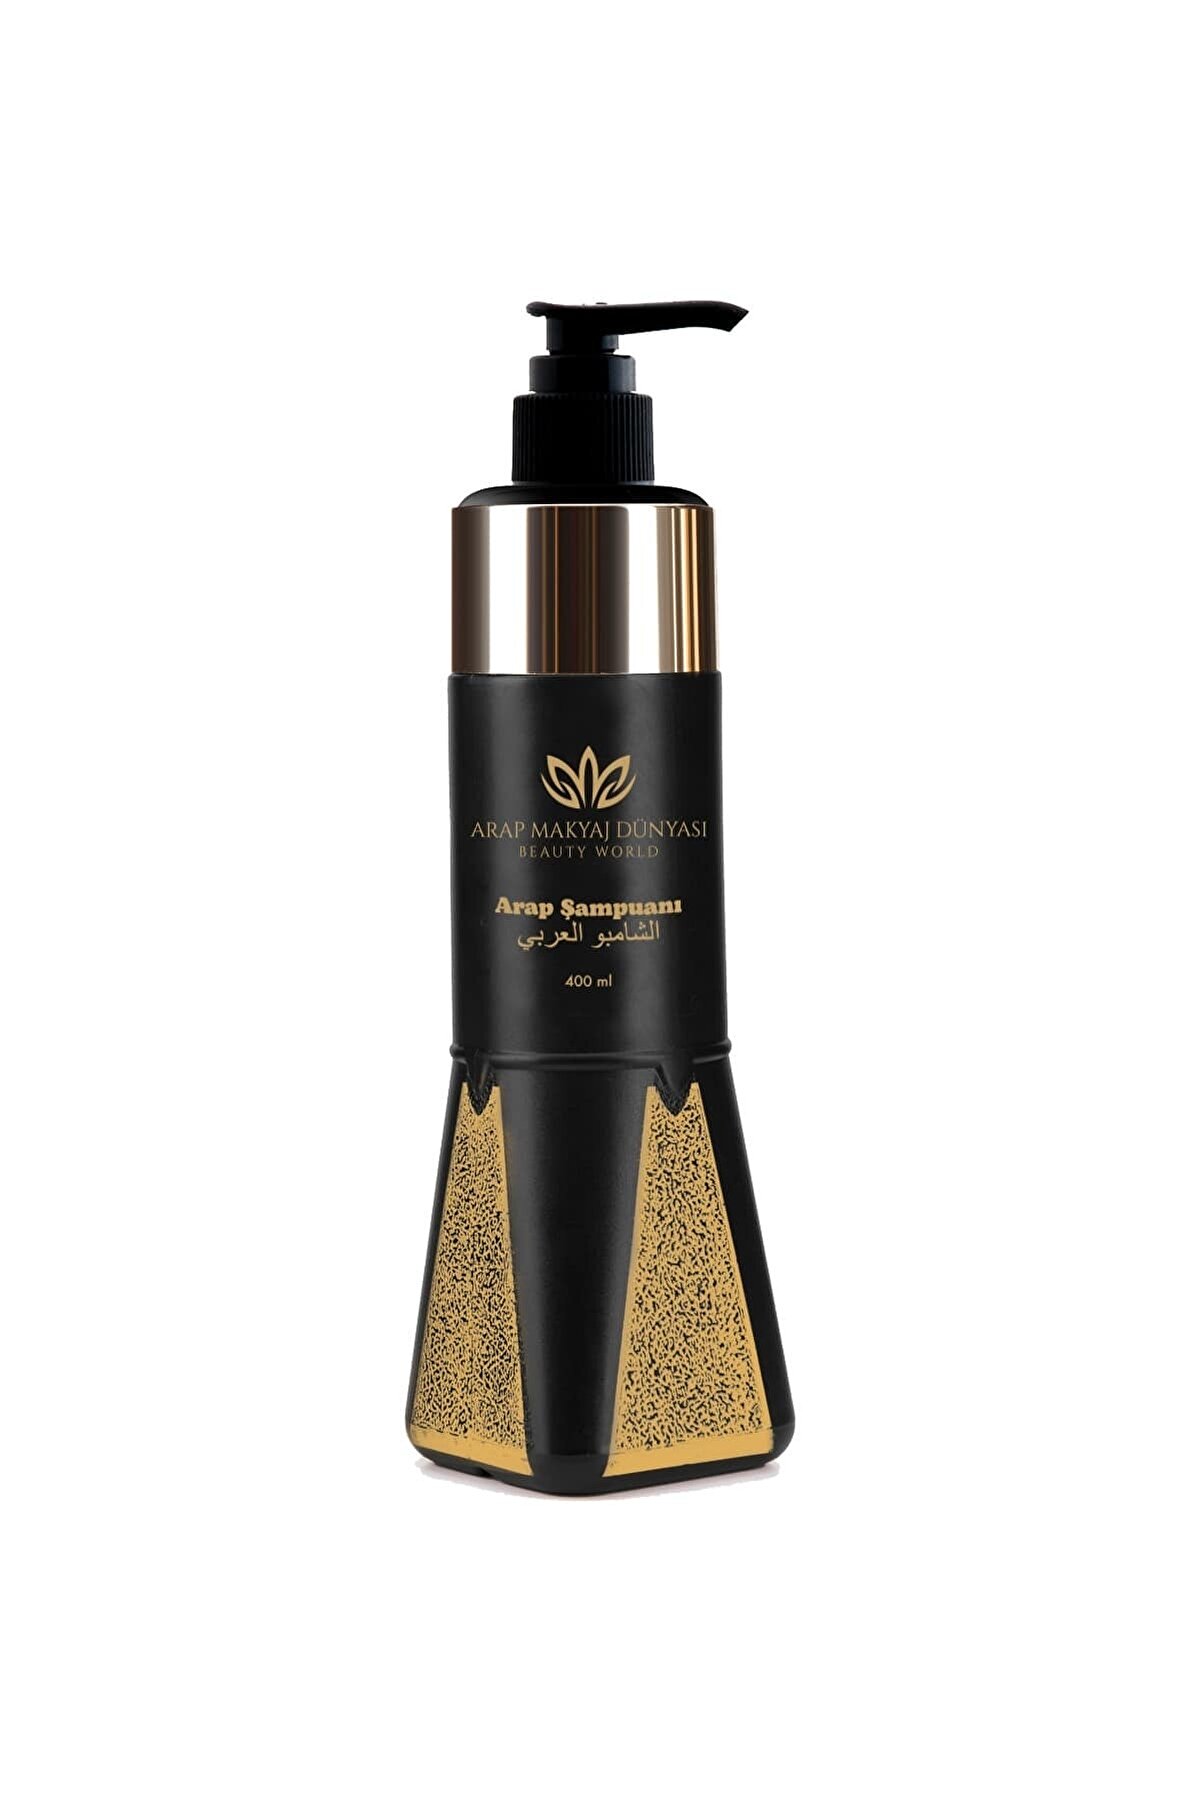 Arap Makyaj Dünyası Arap Şampuanı Gold 400 Ml